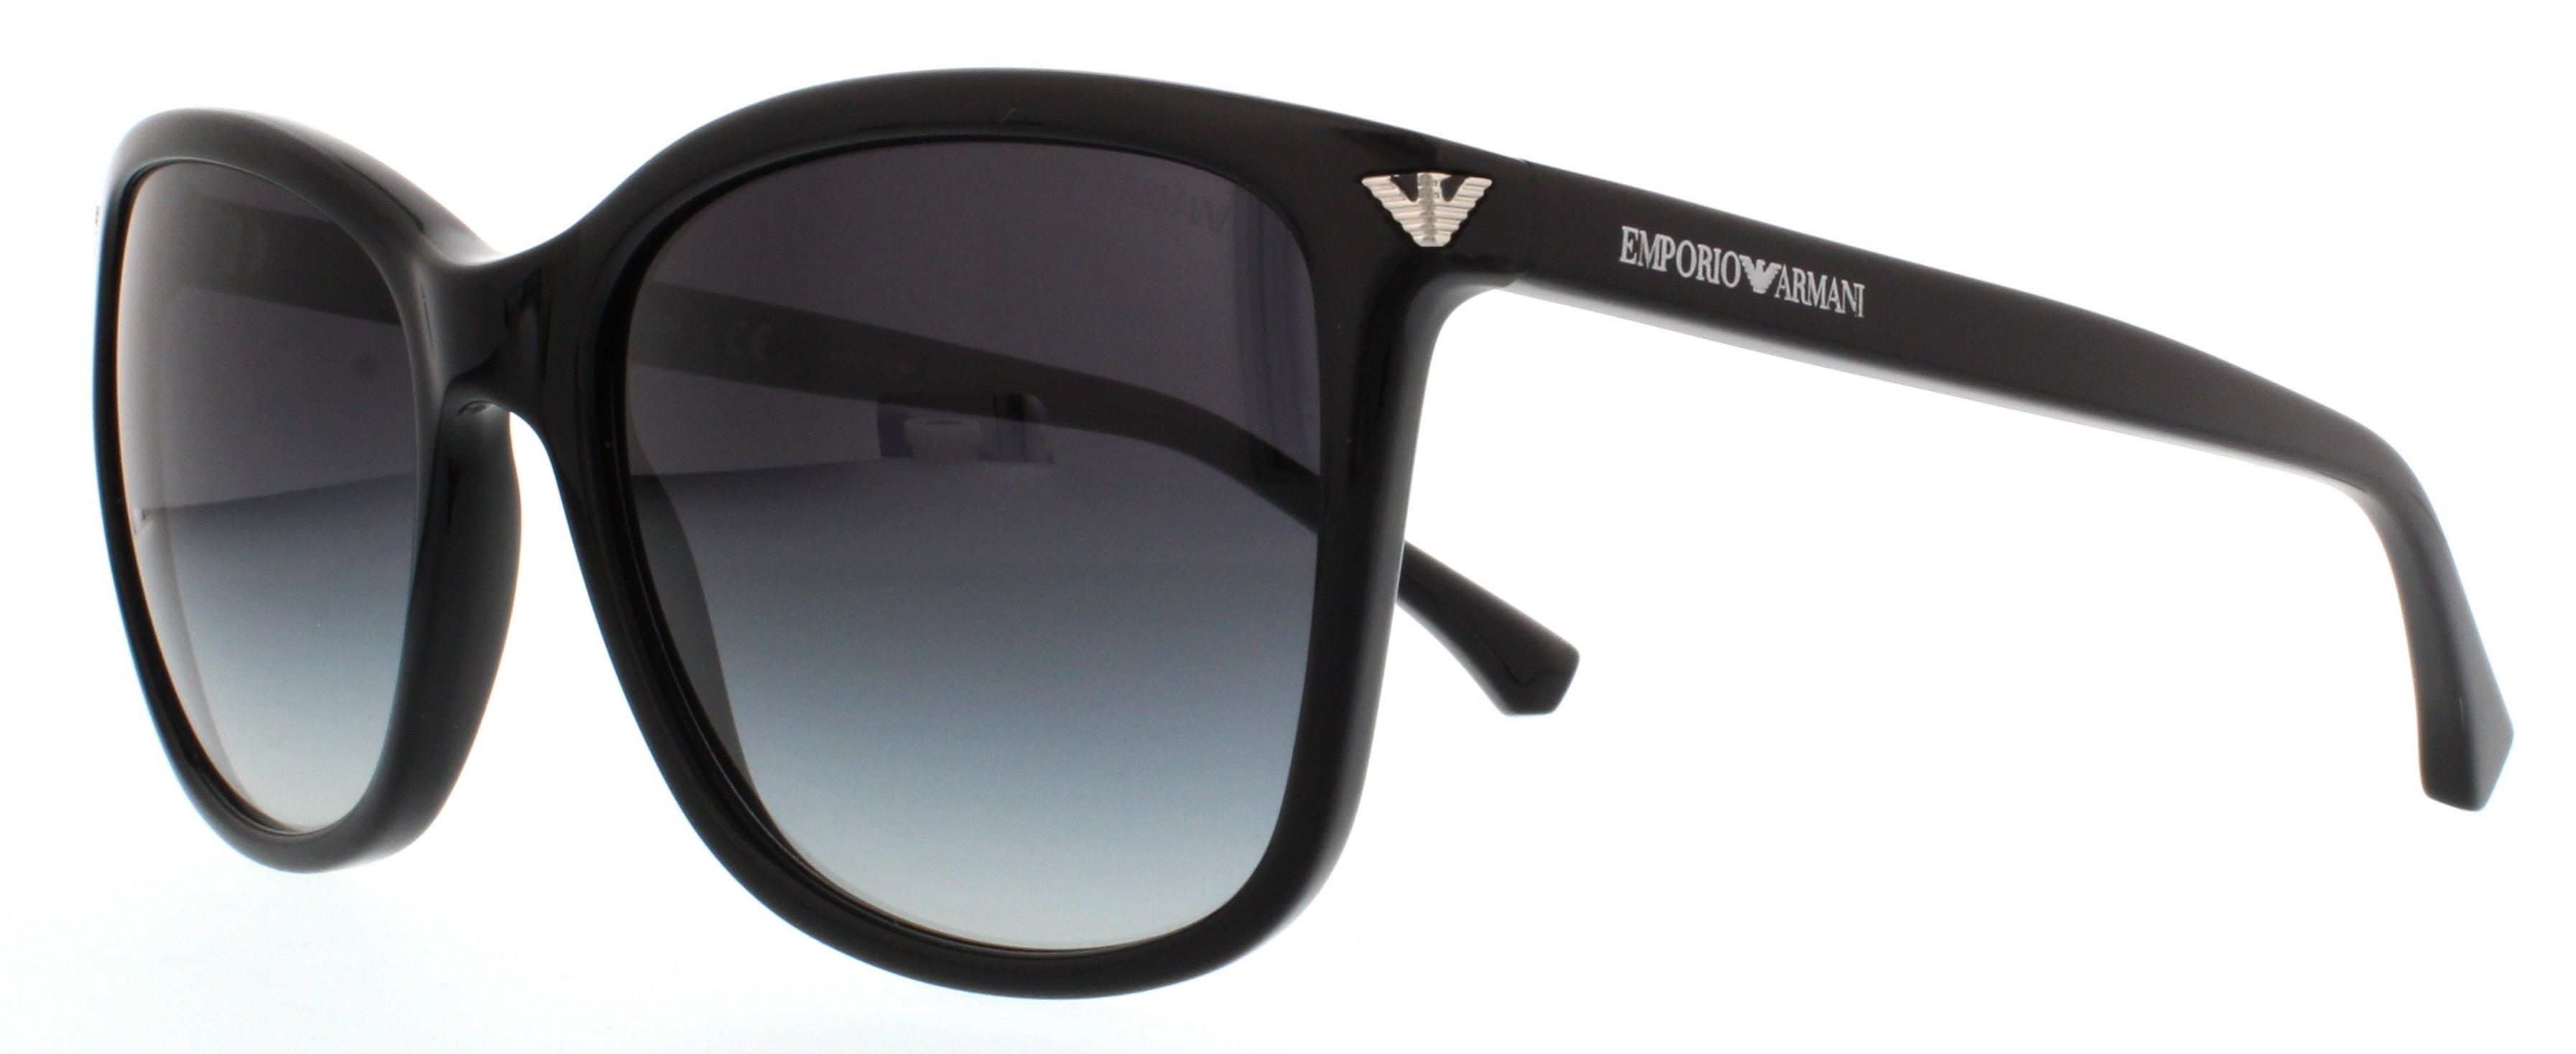 Picture of Emporio Armani Sunglasses EA4060